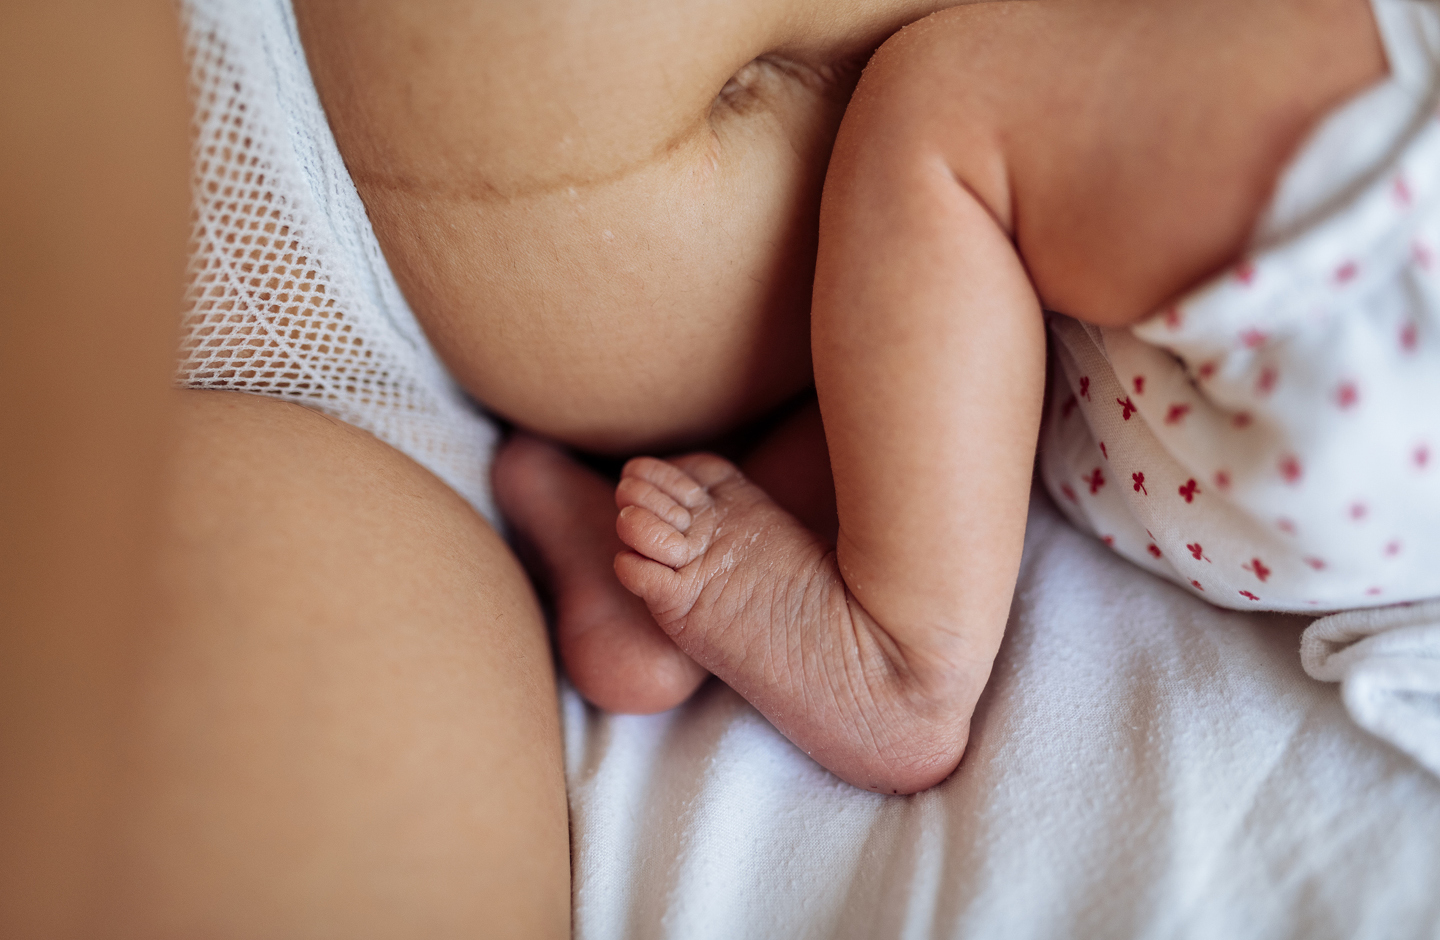 Bildausschnitt Bauch mit deutlichen Spuren der Geburt, Babybeine